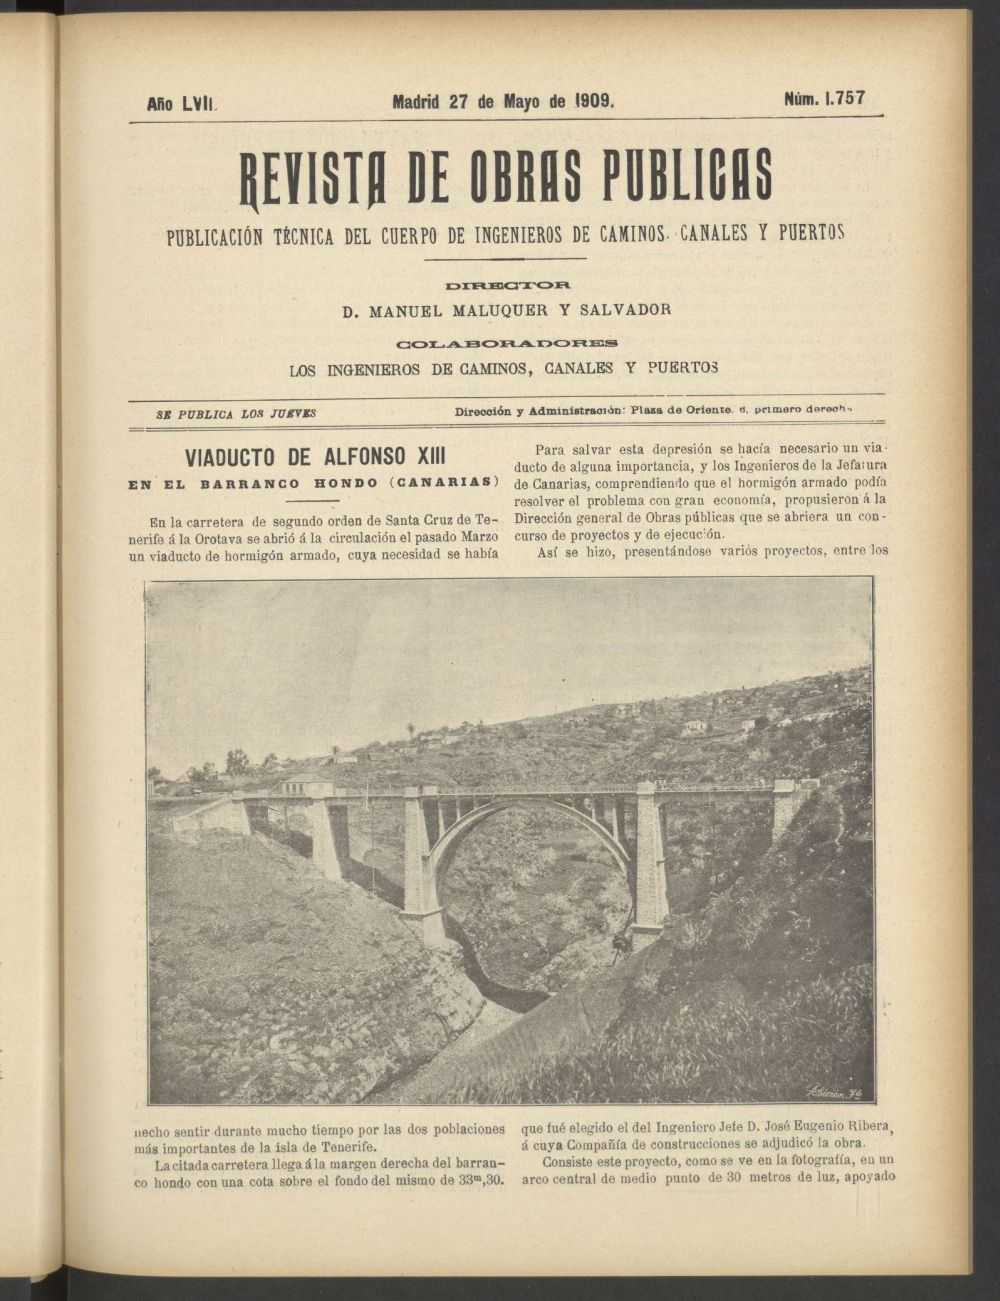 Revista de obras pblicas del 27 de mayo de 1909